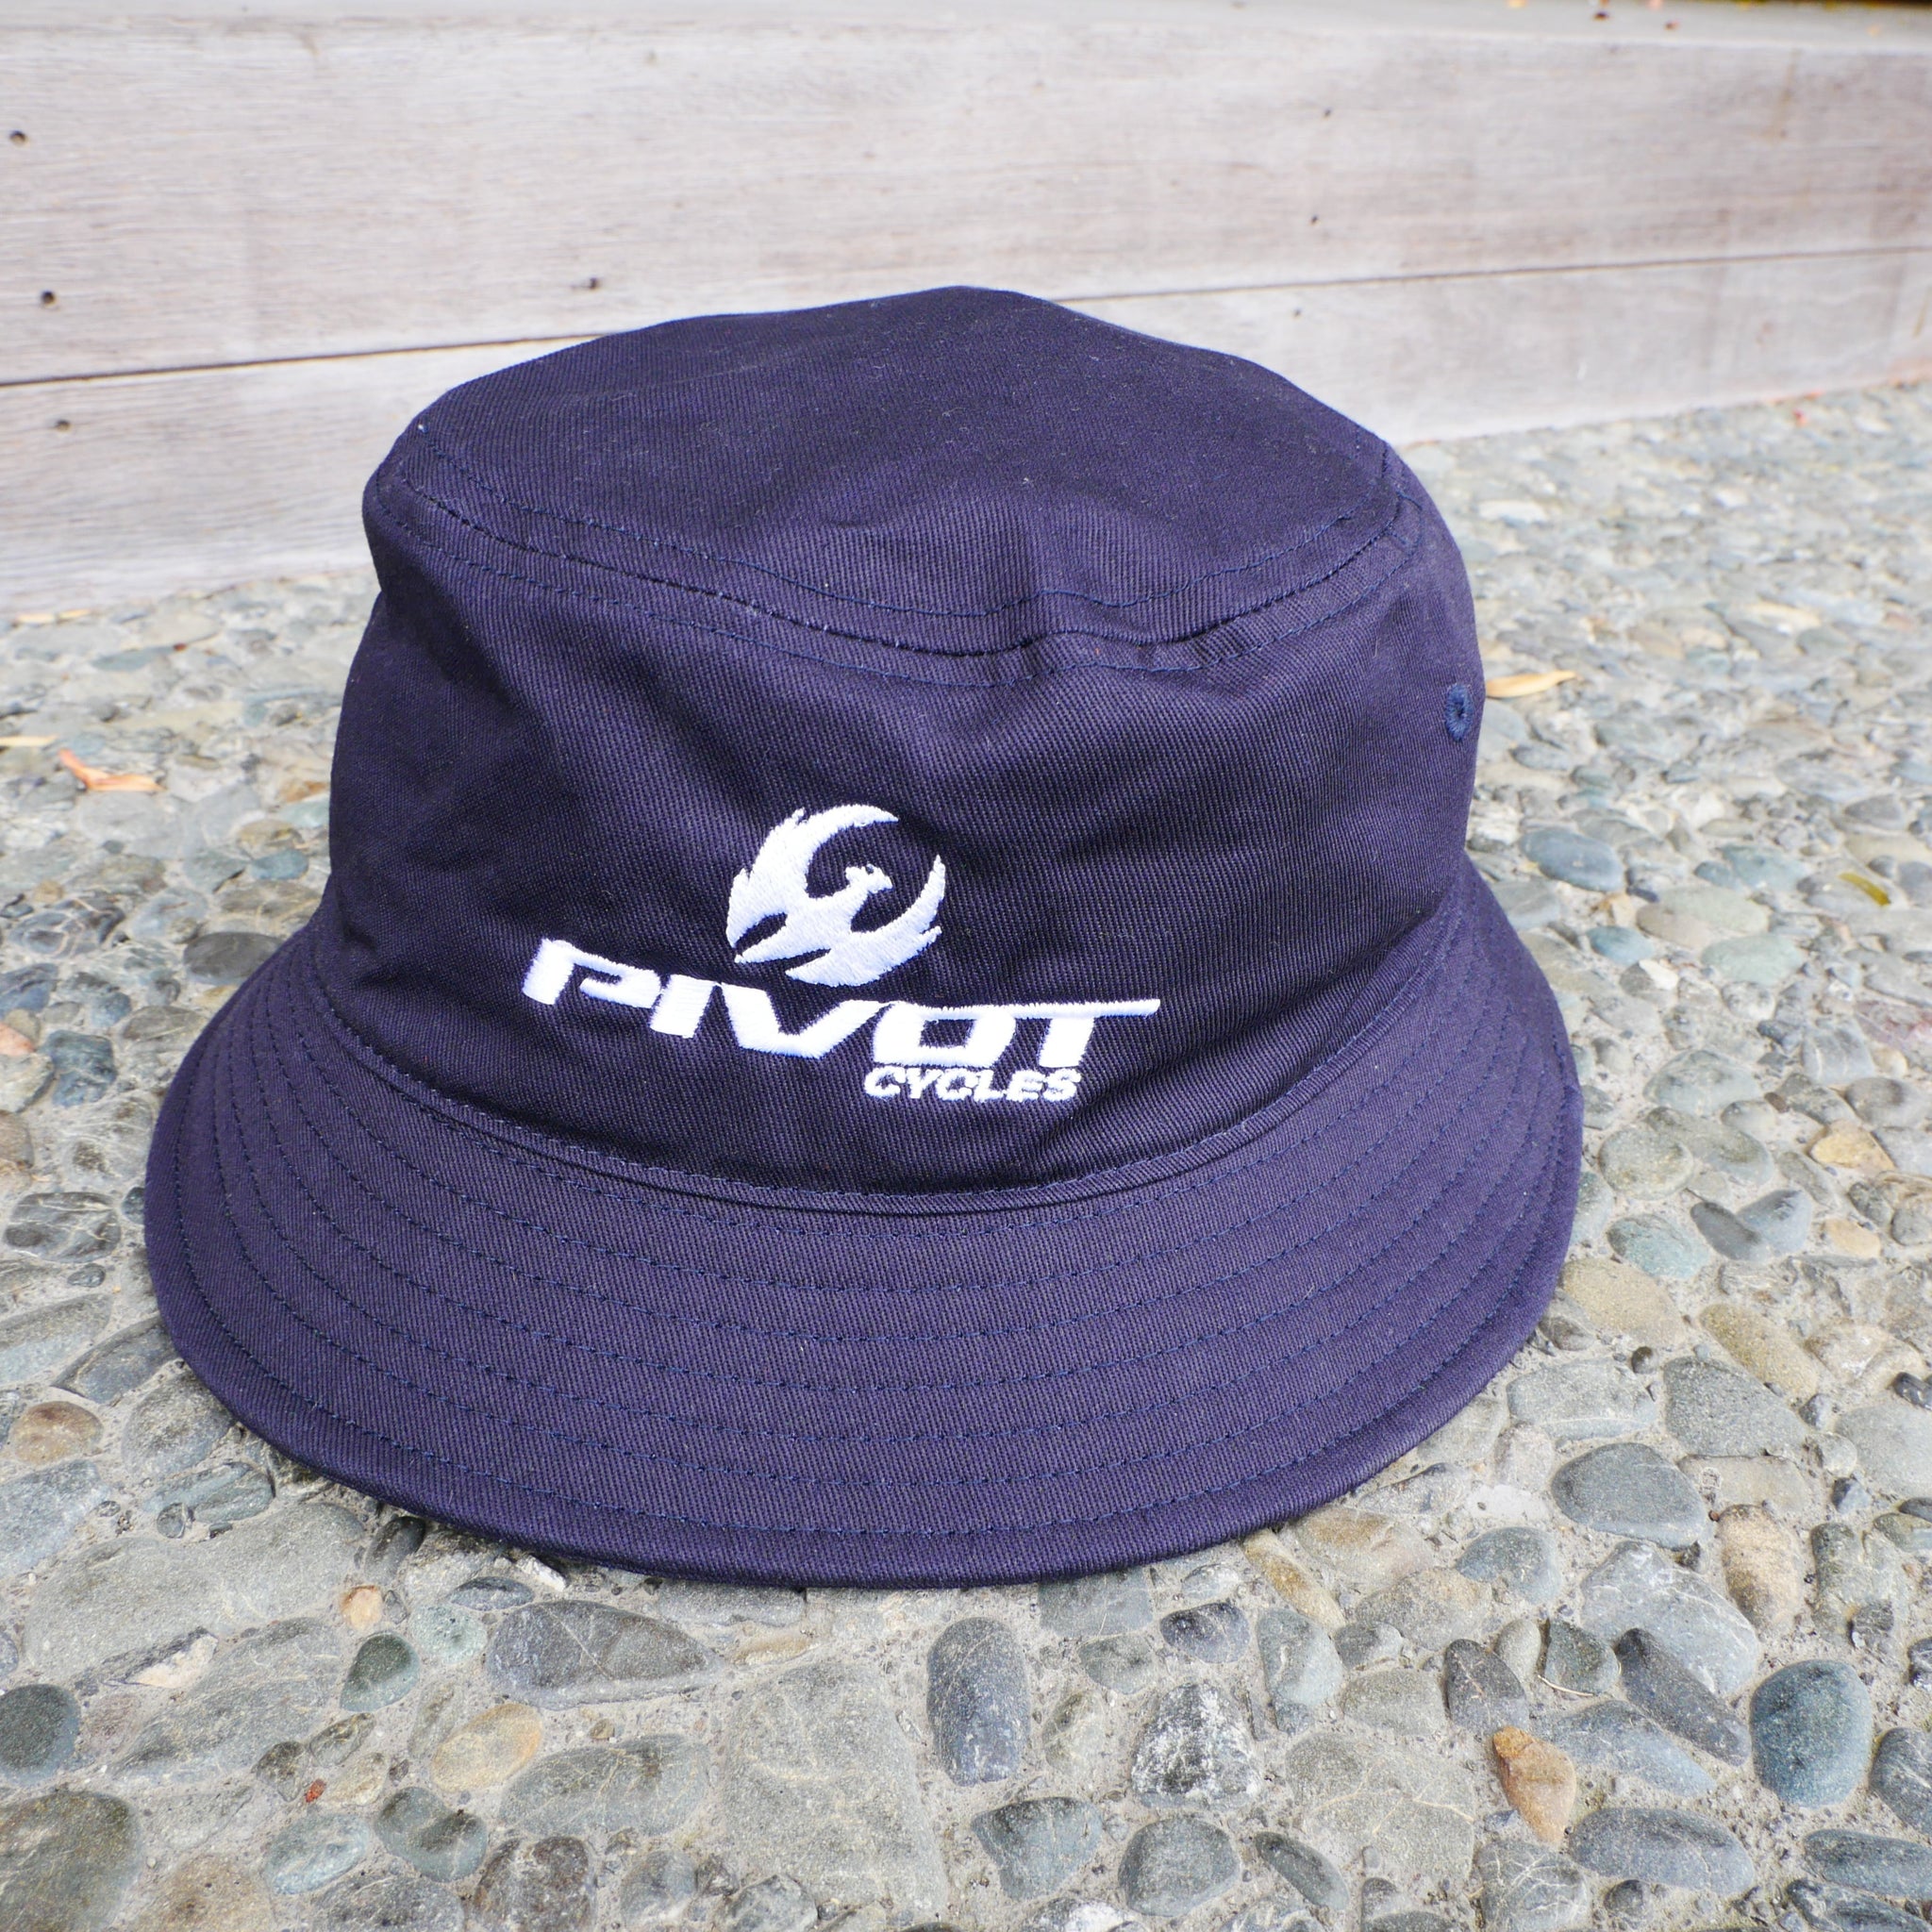 Pivot Bucket Hat - Pivot Cycles NZ